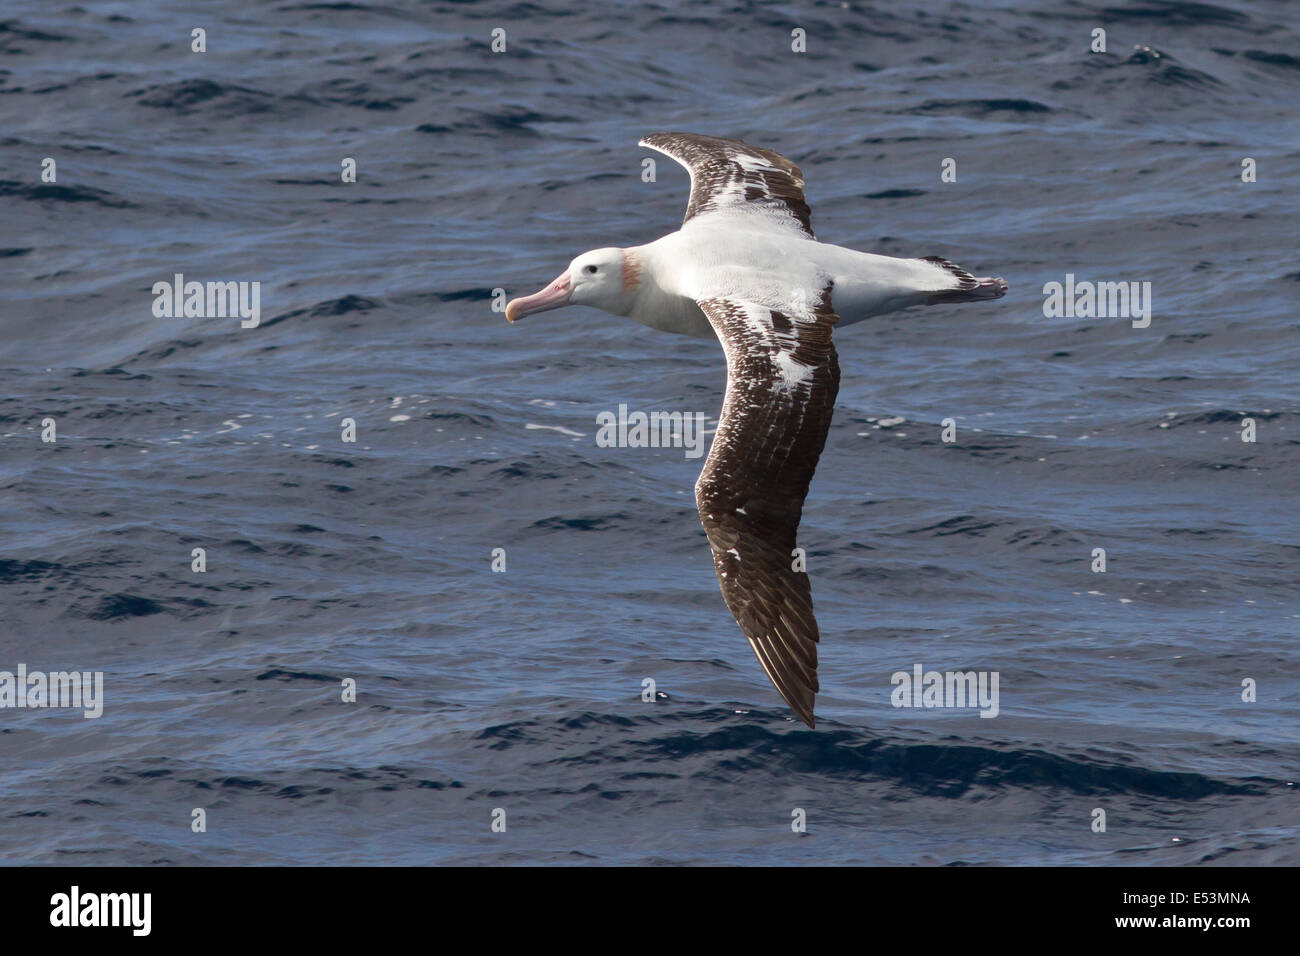 wandering albatross flying over the waters of the Atlantic Ocean Stock Photo